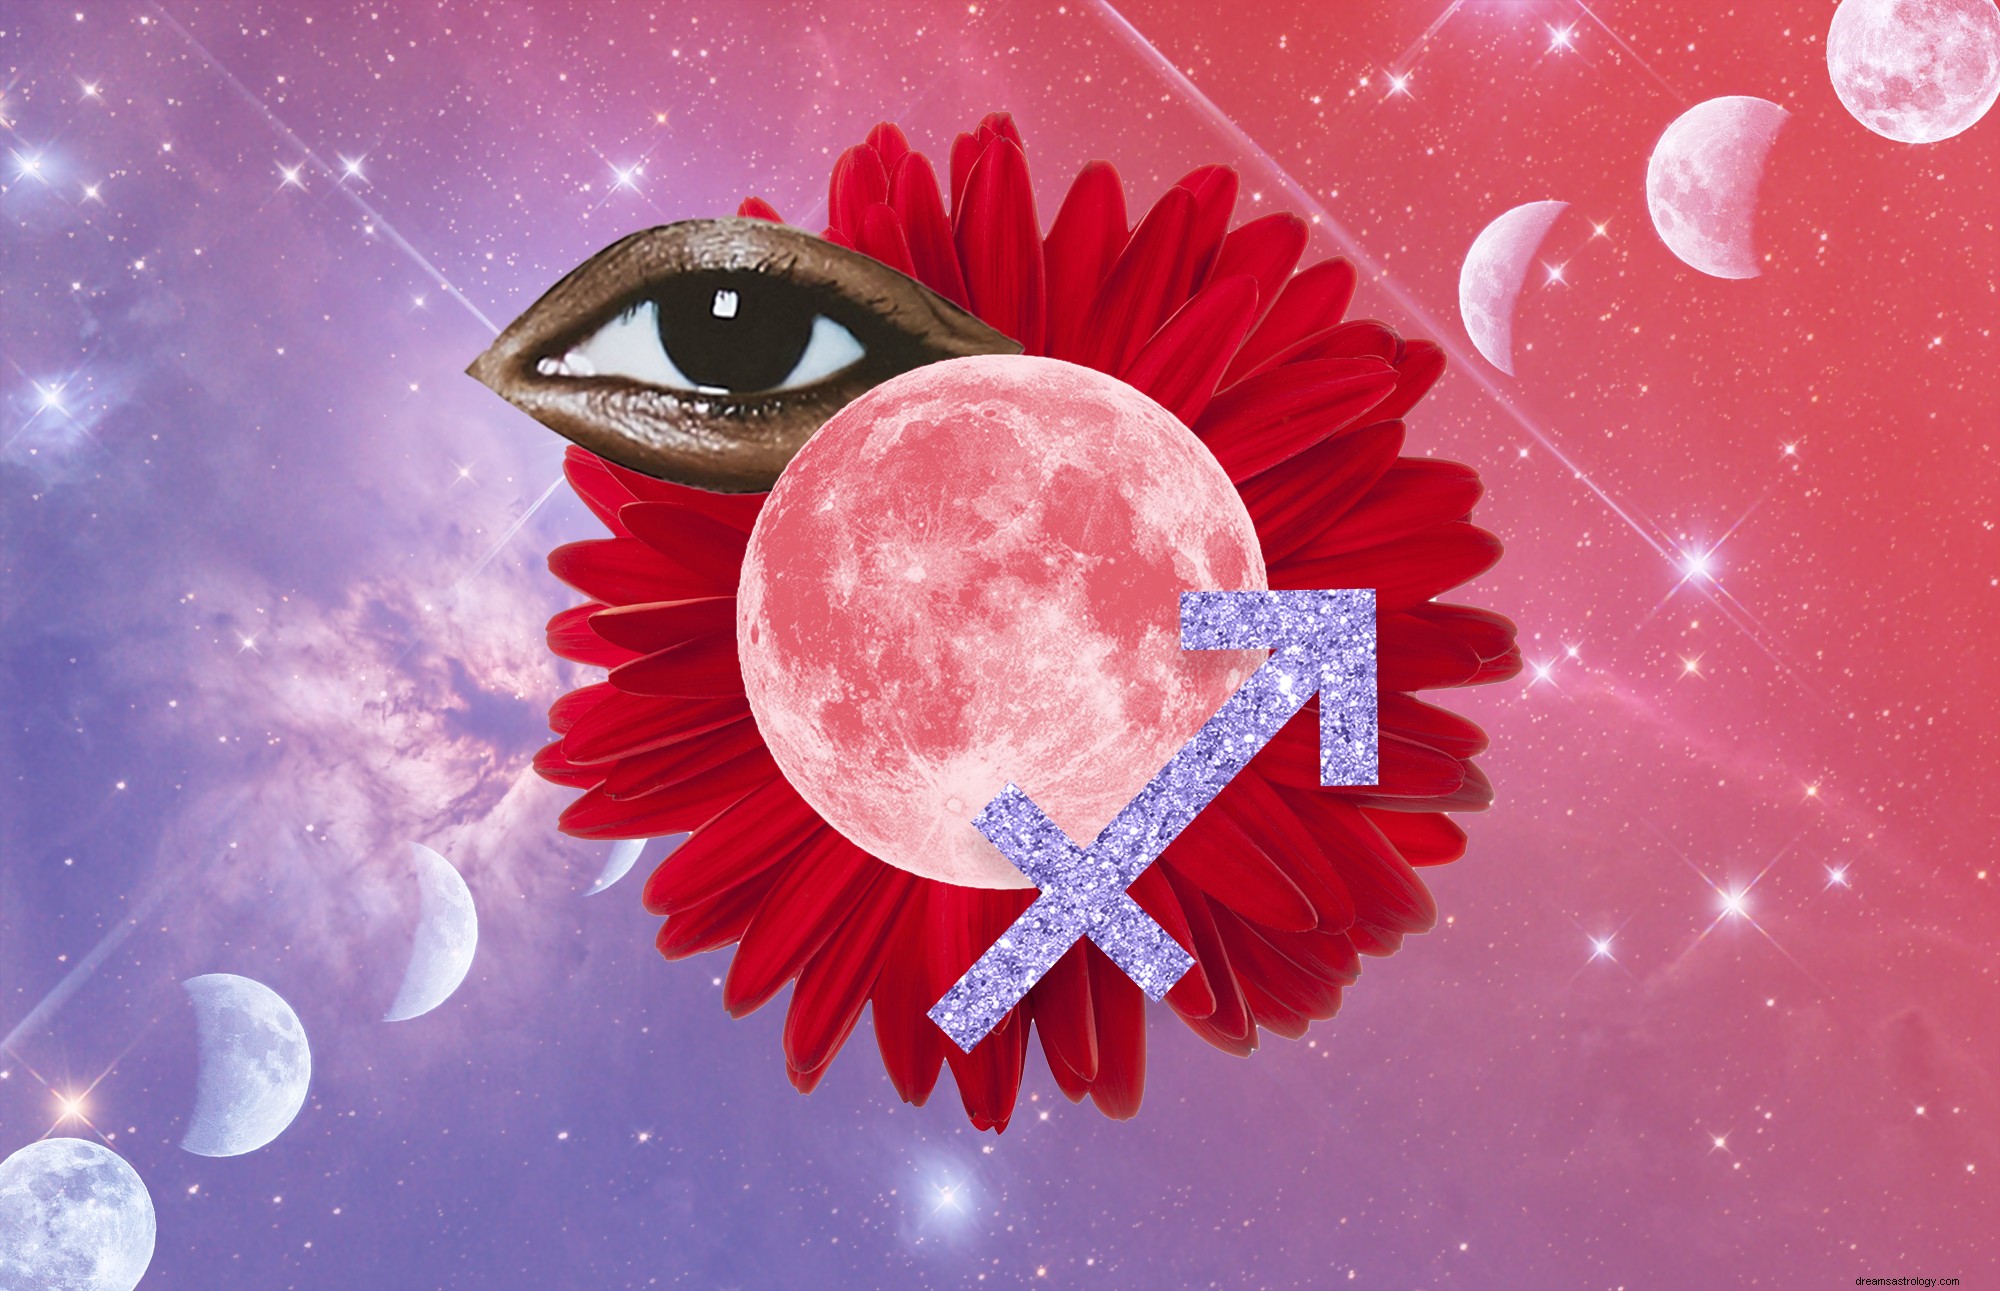 Η έκλειψη Σελήνης του Μαΐου 2021 Super Flower Blood Moon θα μπορούσε να σας εκτοξεύσει στο επόμενο κεφάλαιο της ζωής σας 